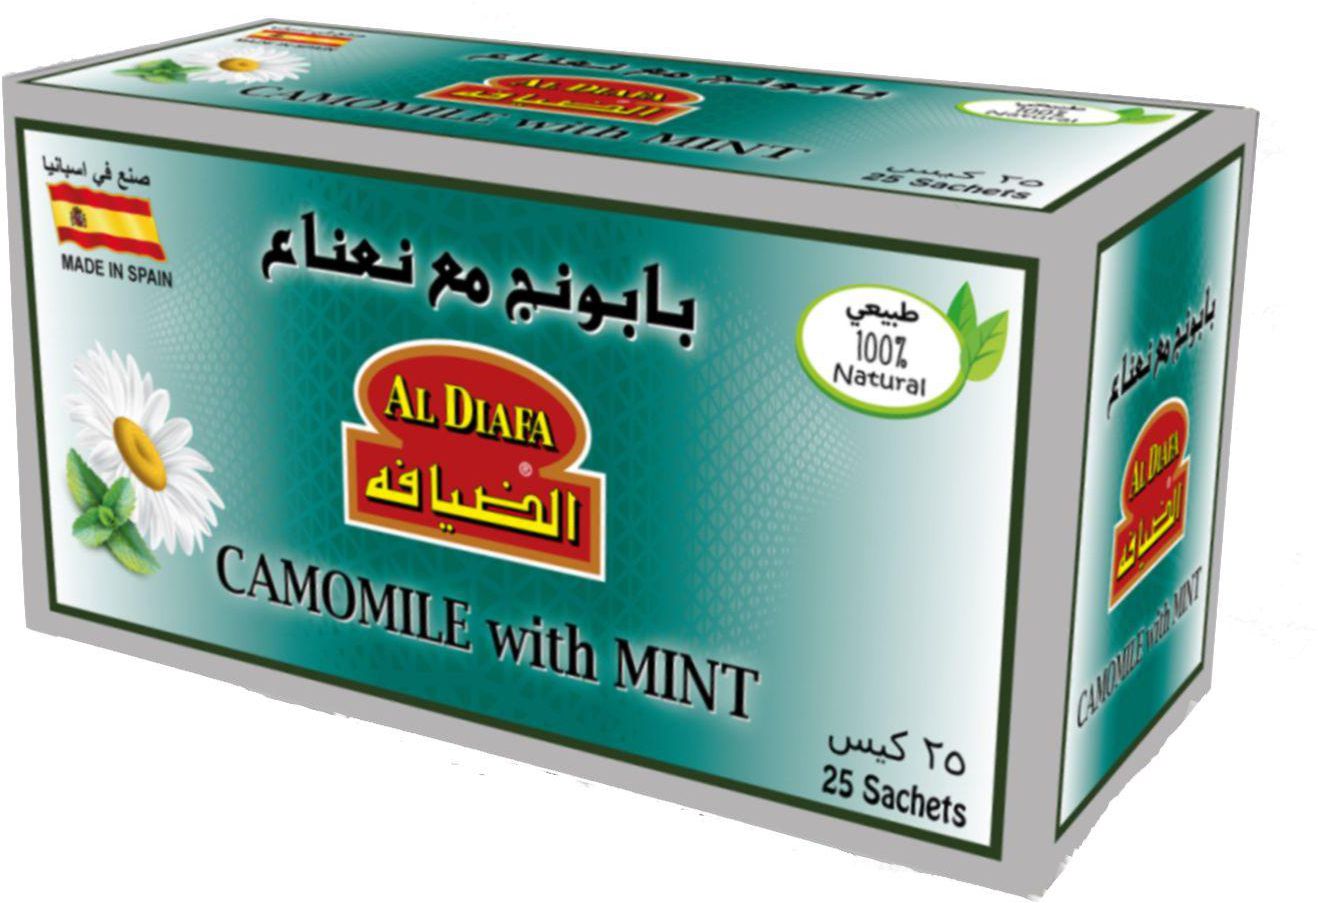 Al Diafa, Camomile With Mint ,Tea Bag - 25 Pcs